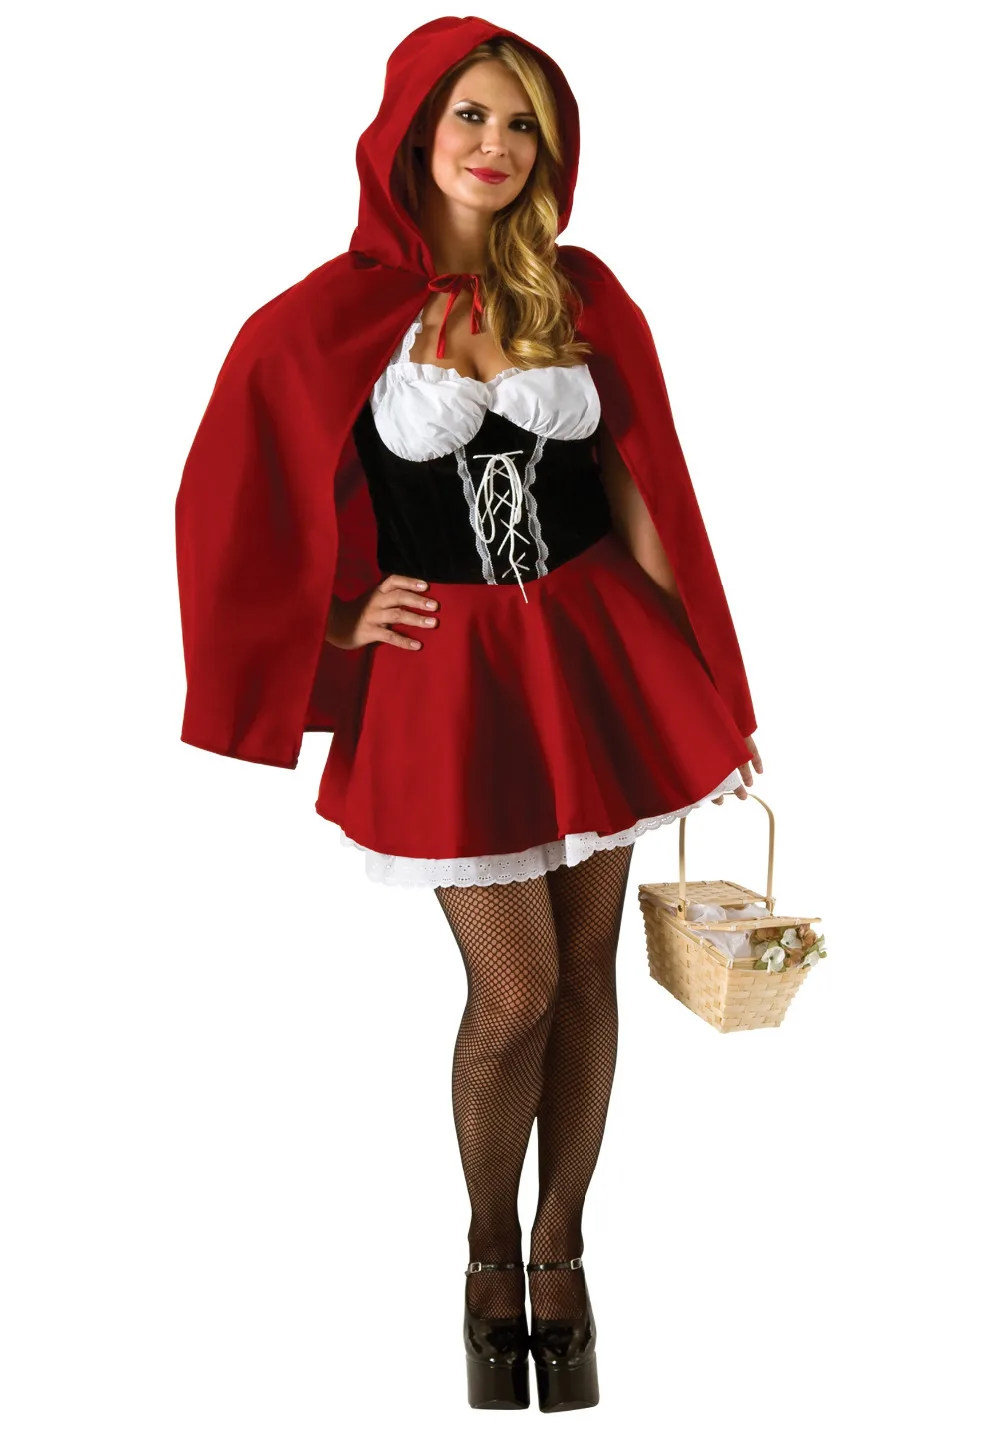 Костюм Красной Шапочки размера плюс 6XL 5XL 4XL 3XL 2XL женский маскарадный костюм на Хэллоуин